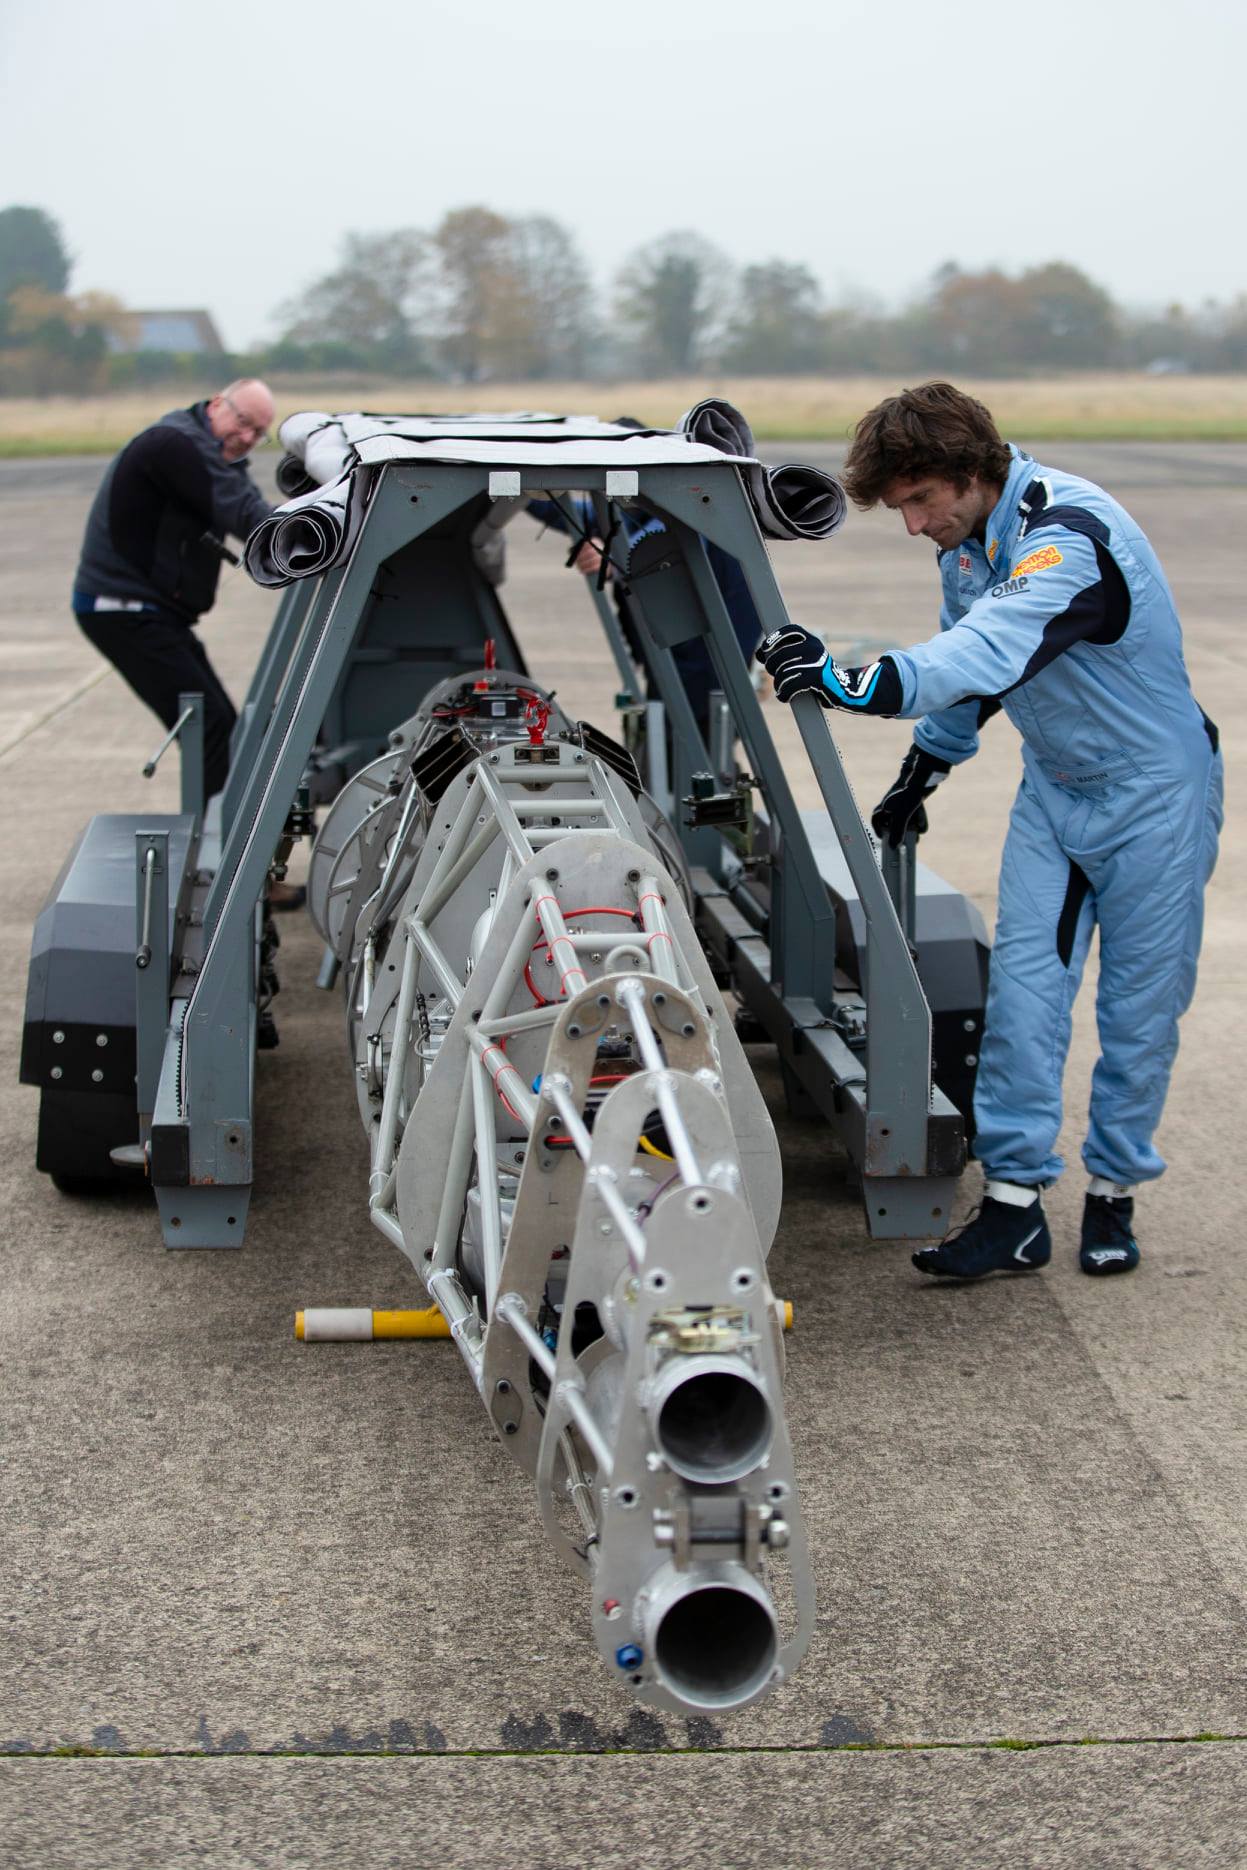 盖伊·马丁驾驶着52 Express——一架30英尺长的流线型飞机，使用了劳斯莱斯宝石直升机50年历史的涡轮发动机——试图在2023年1月在玻利维亚打破世界陆地速度纪录。媒体:第二轮测试运行已完成